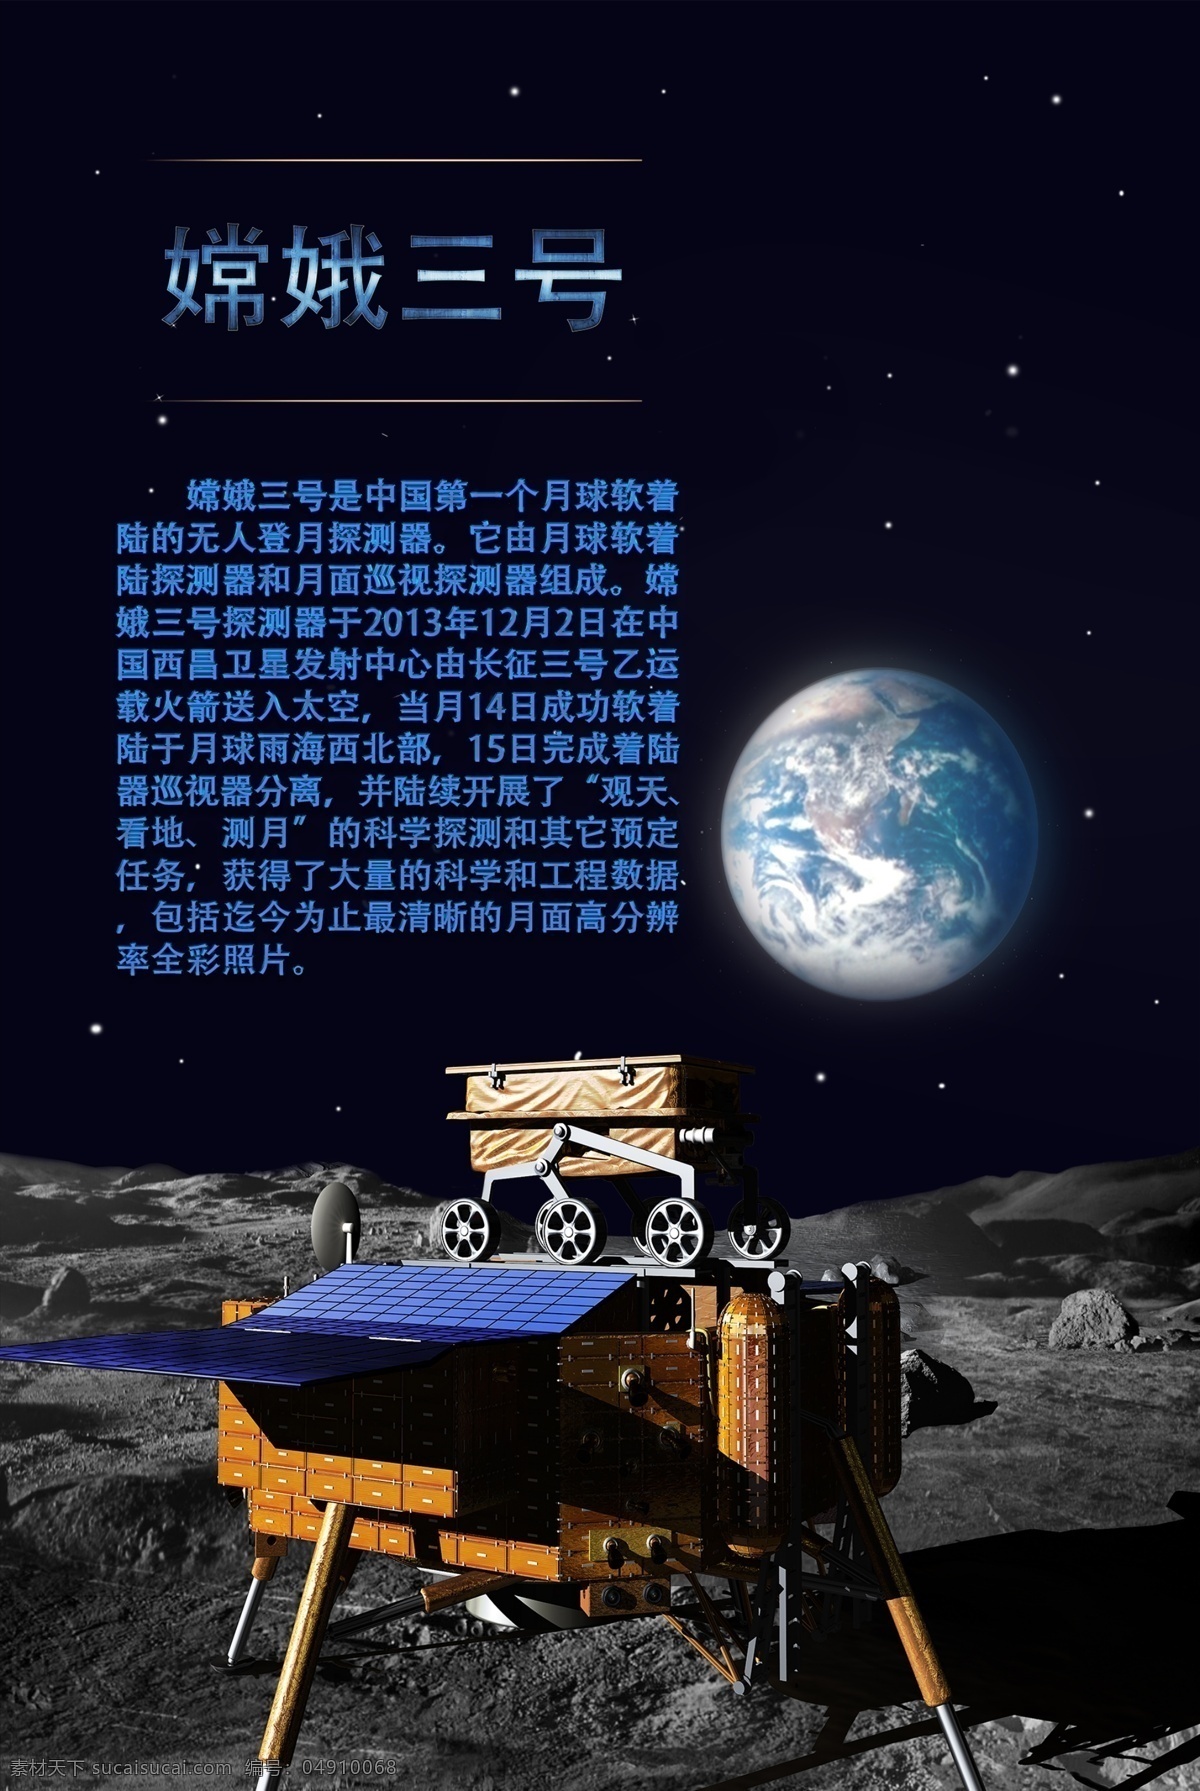 嫦娥三号海报 嫦娥三号 海报 月球 月球车 着陆器 科技 科技感 艺术字 嫦娥 地球 登月 探测器